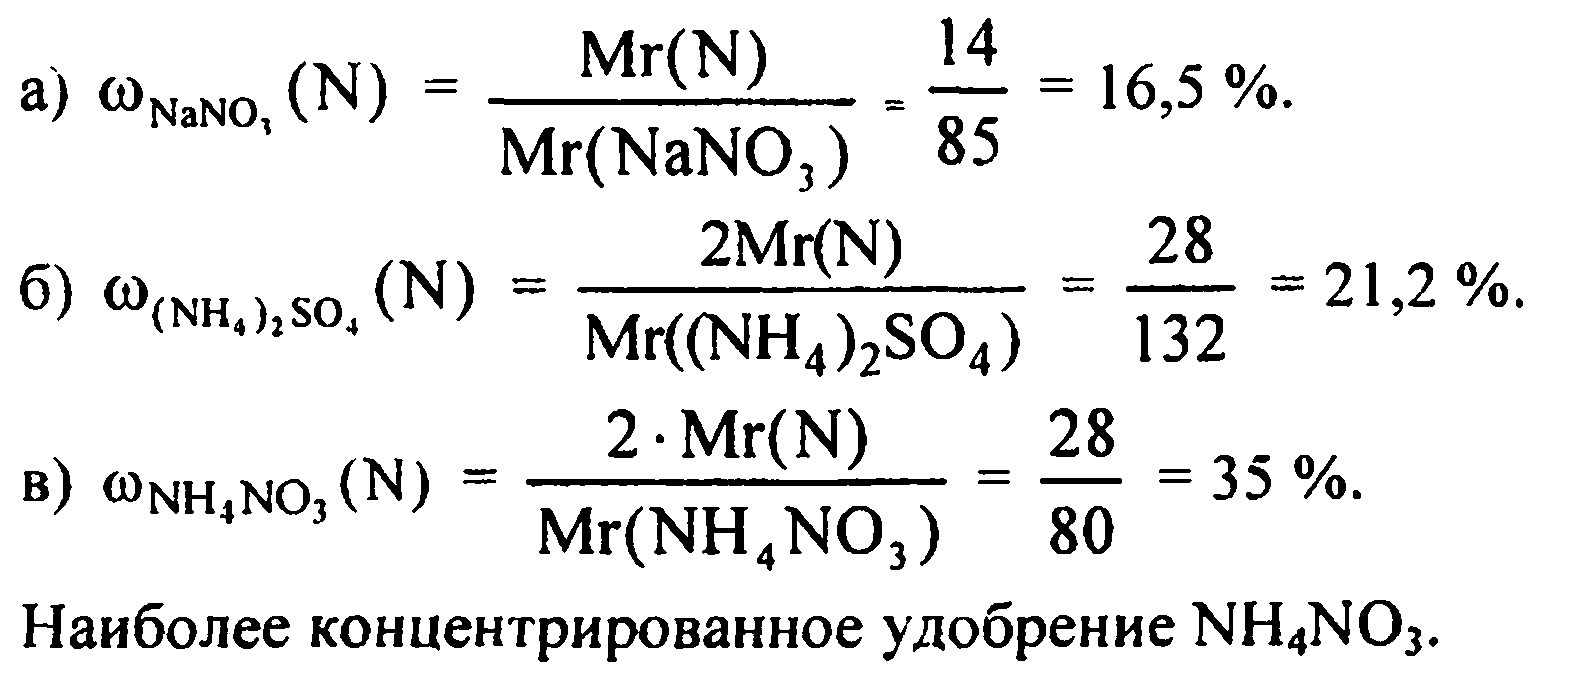 В котором азотном удобрении массовая доля азота больше: в натриевой селитре NaNo3 или в аммонийной селитре NH4NO3? Ответ подтвердите расчетами.